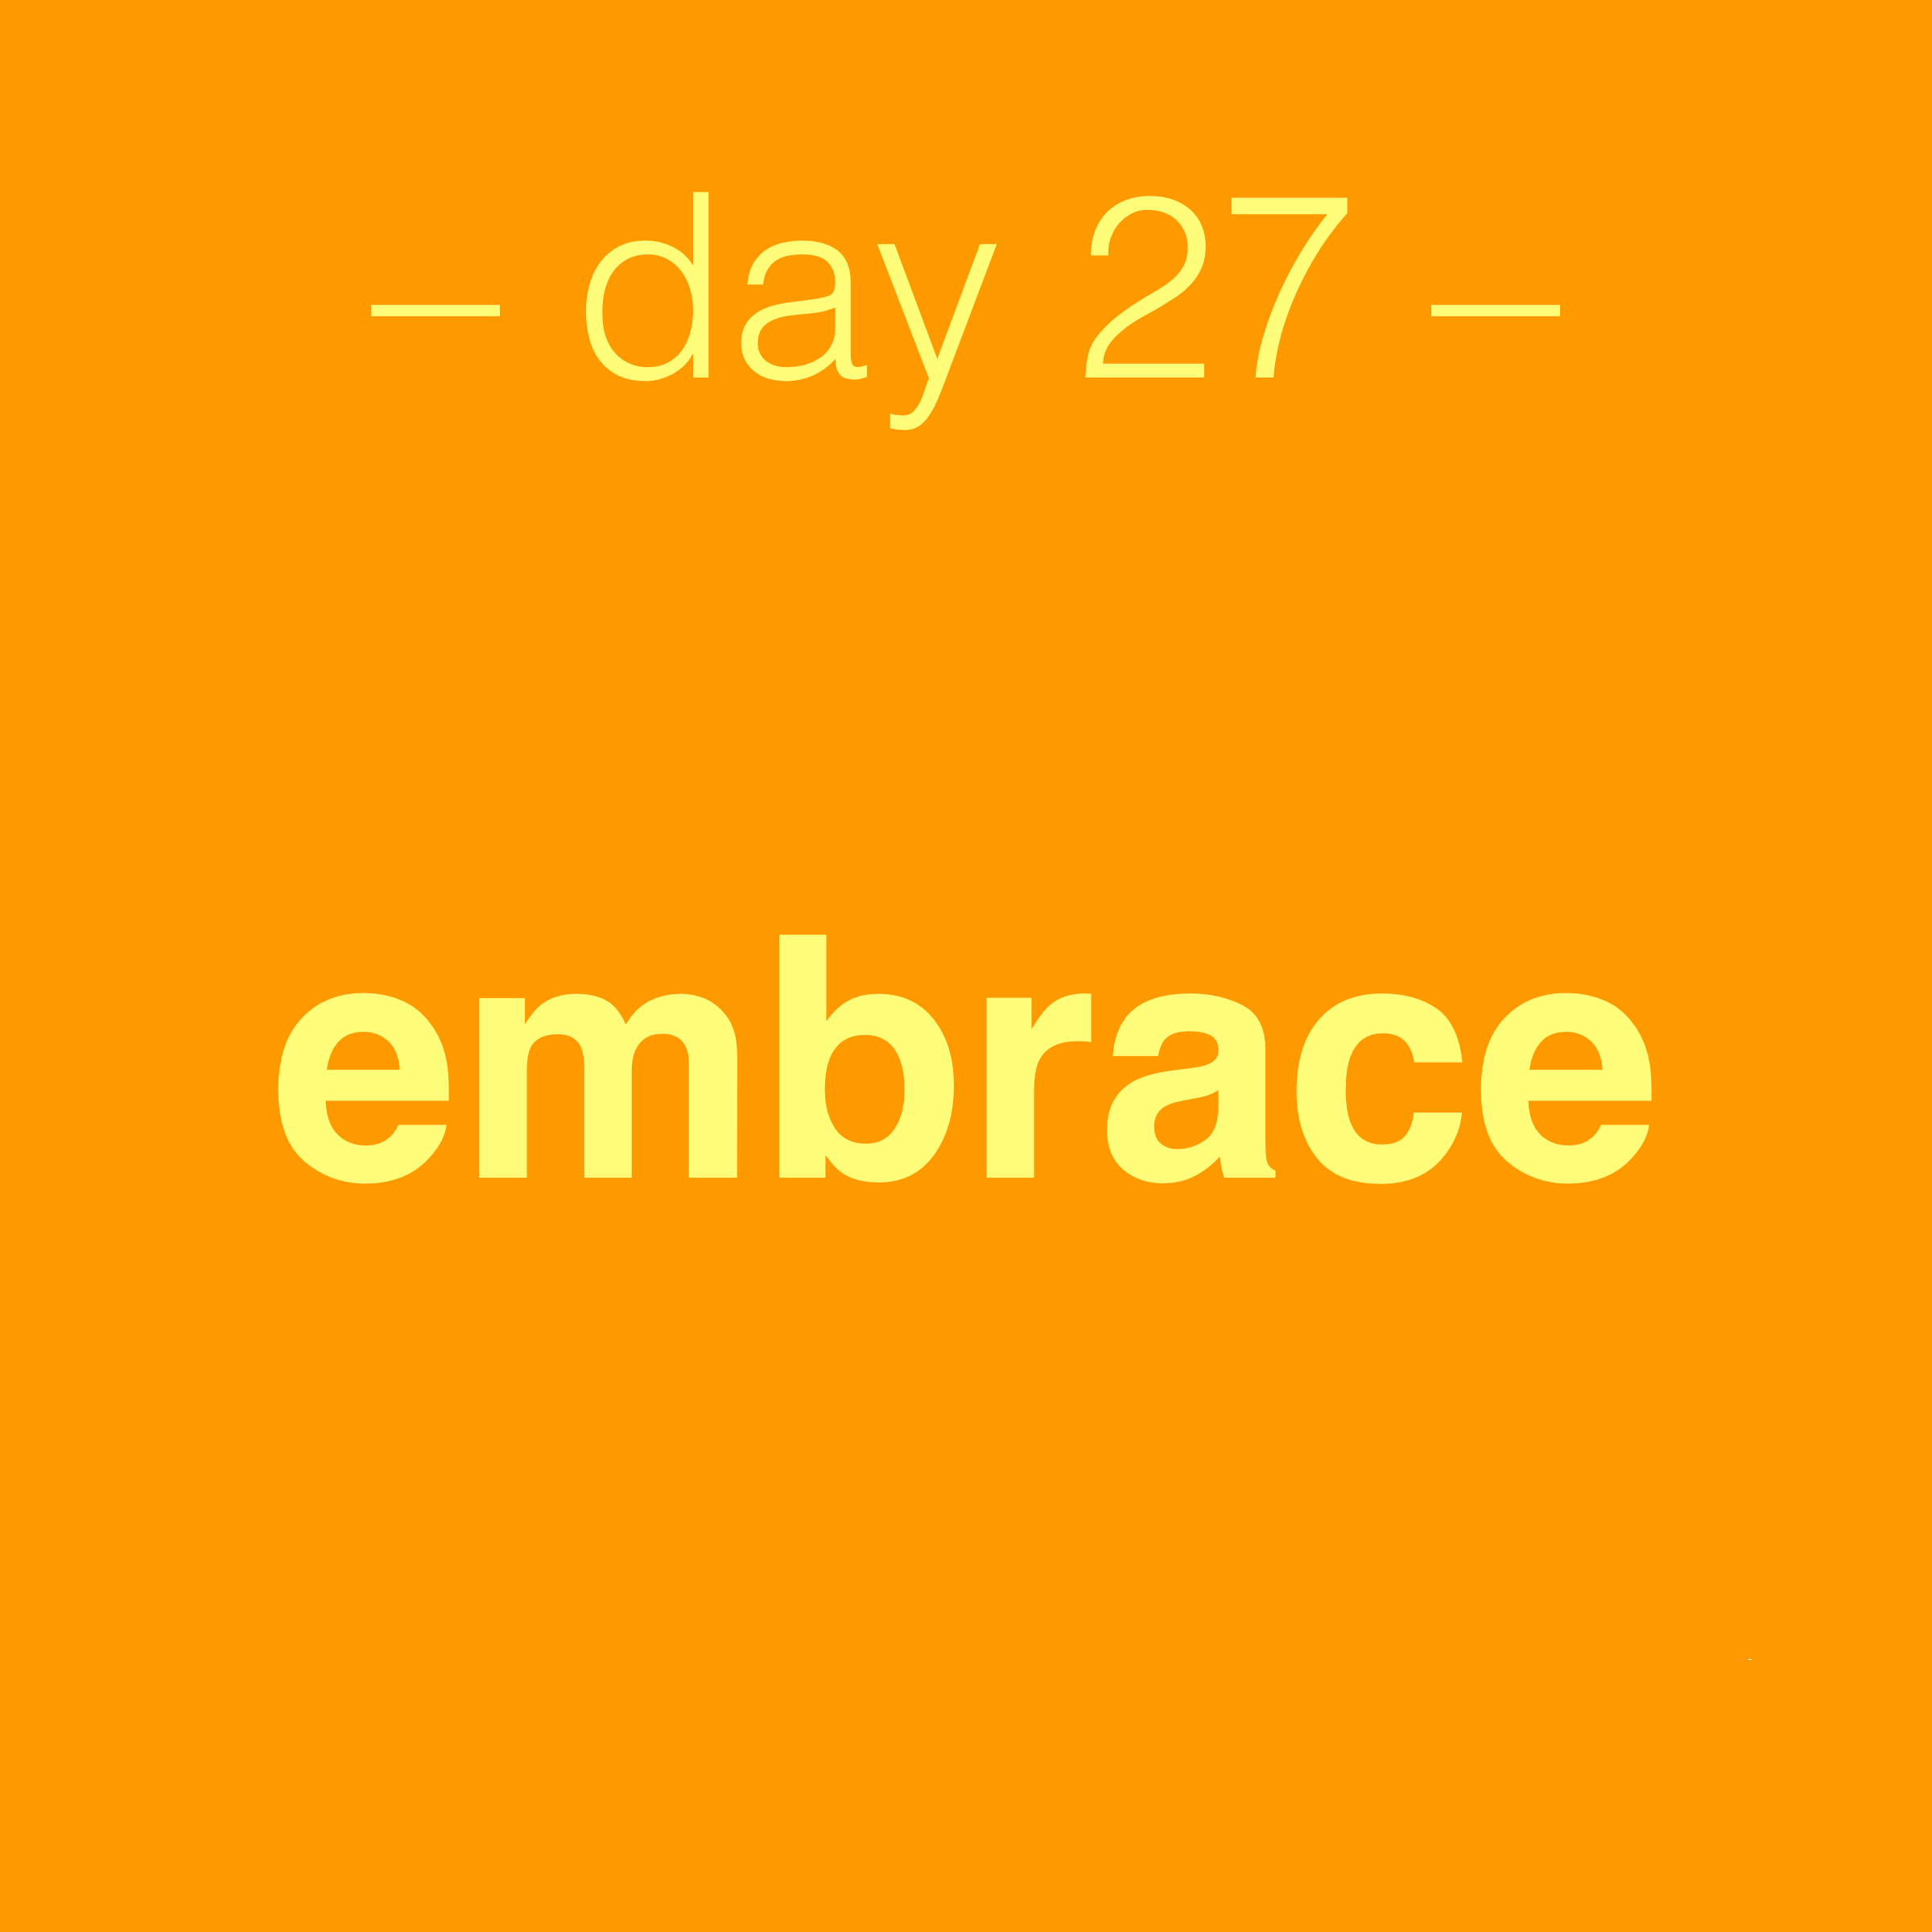 day 27 - embrace